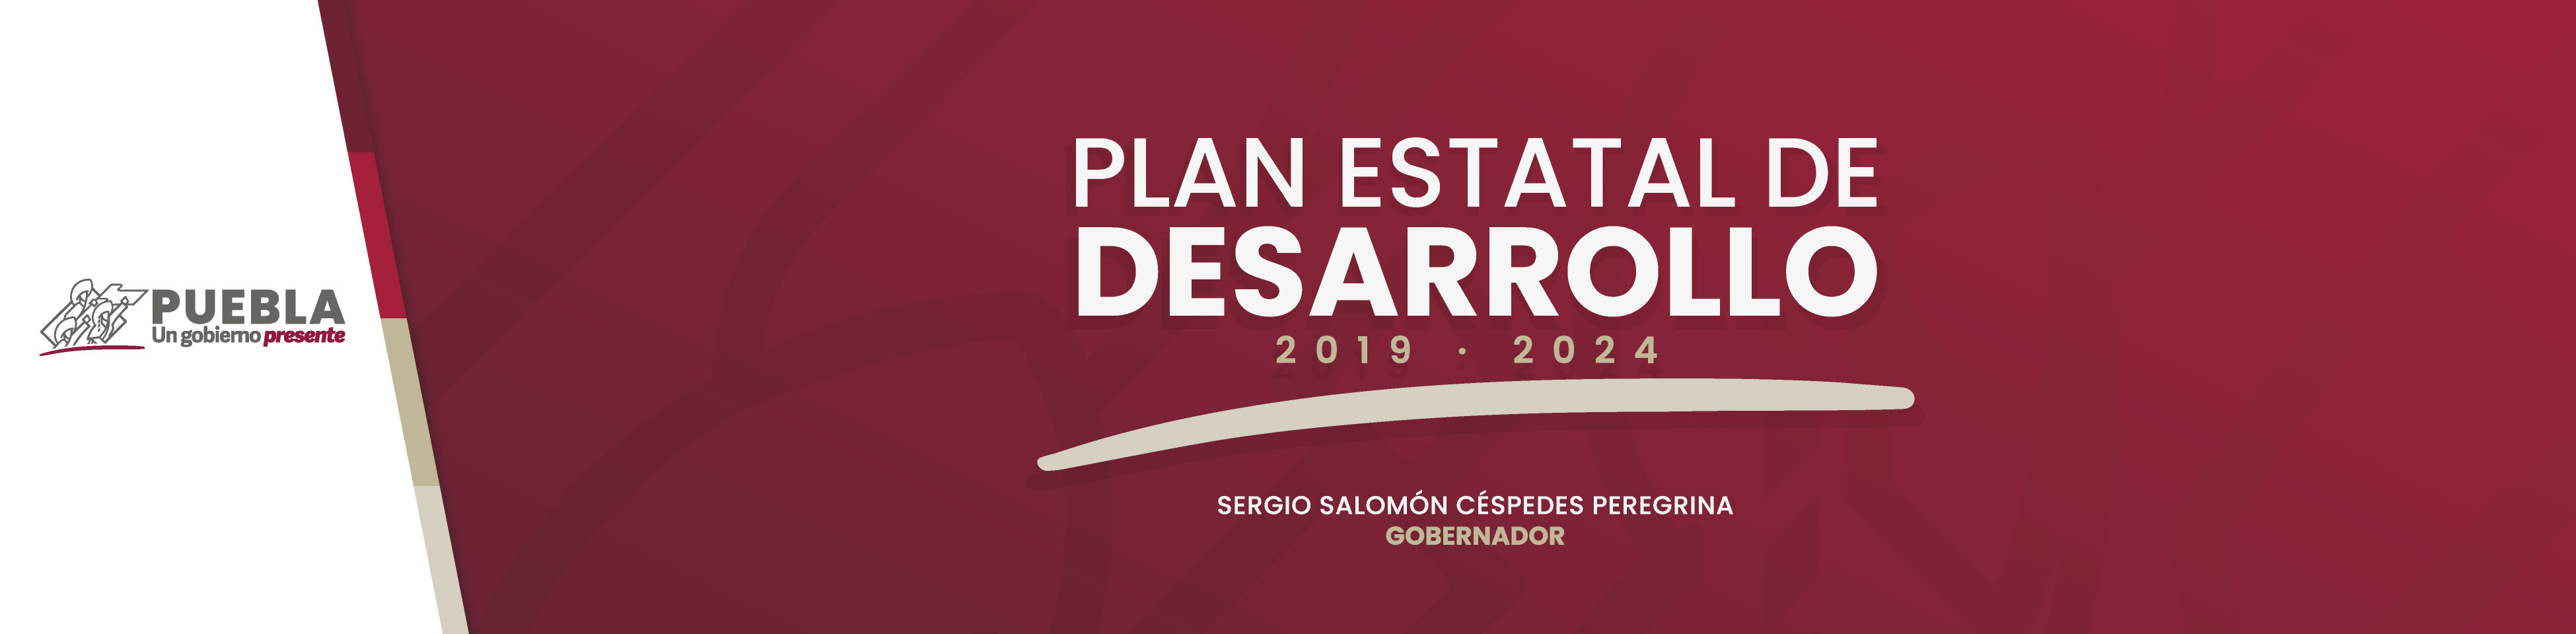 Banner Principal del Plan Estatal de Desarrollo  2019-2024